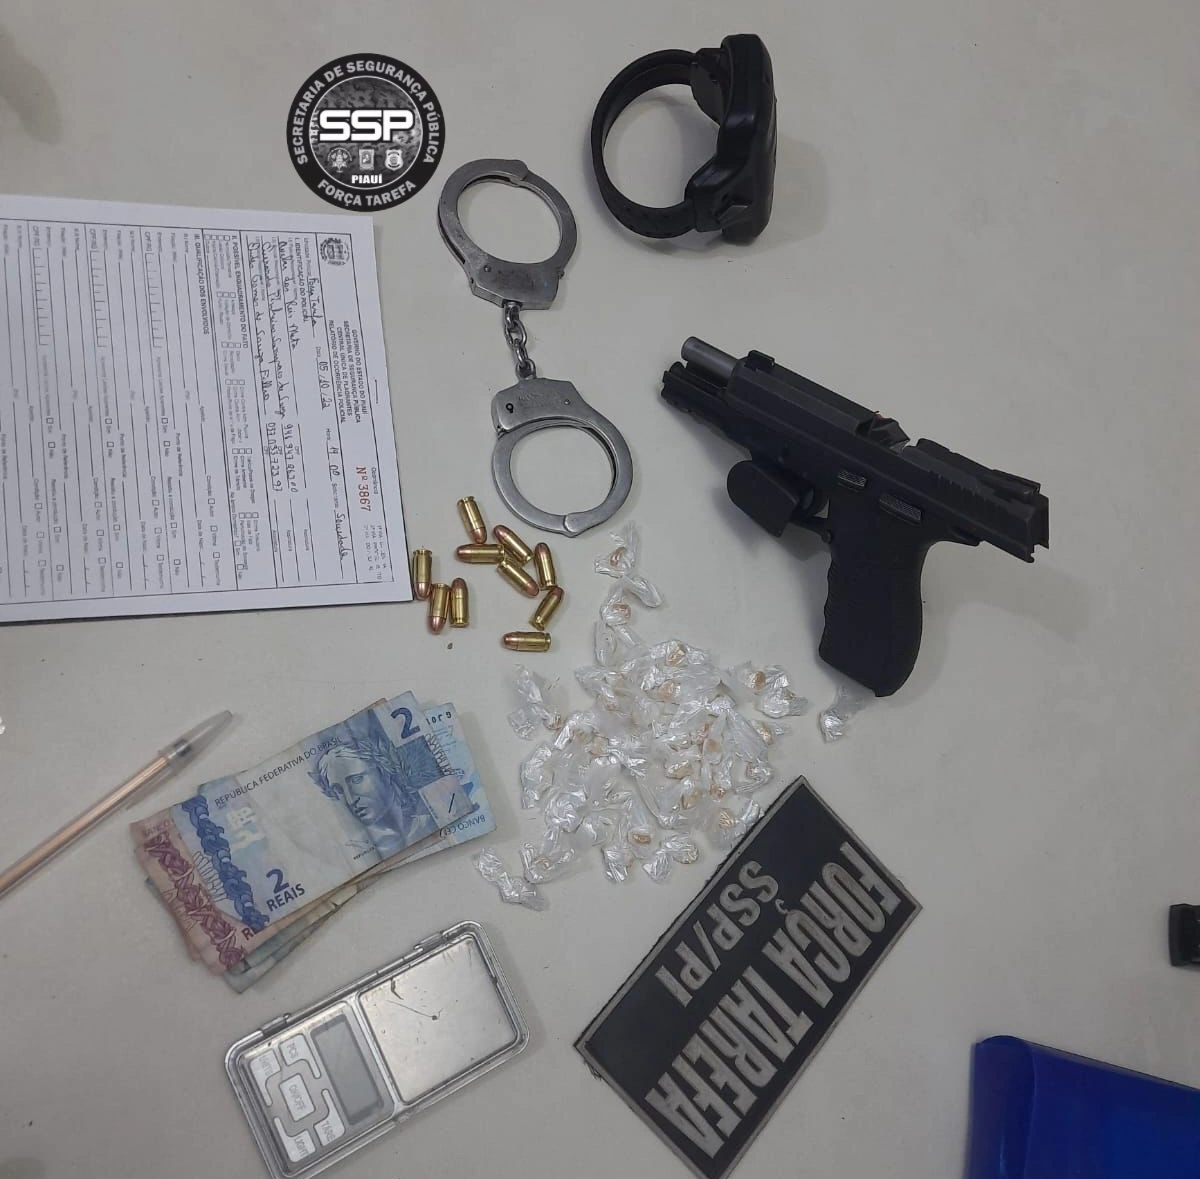 Acusado de tráfico de drogas é preso com armas e munições em Teresina